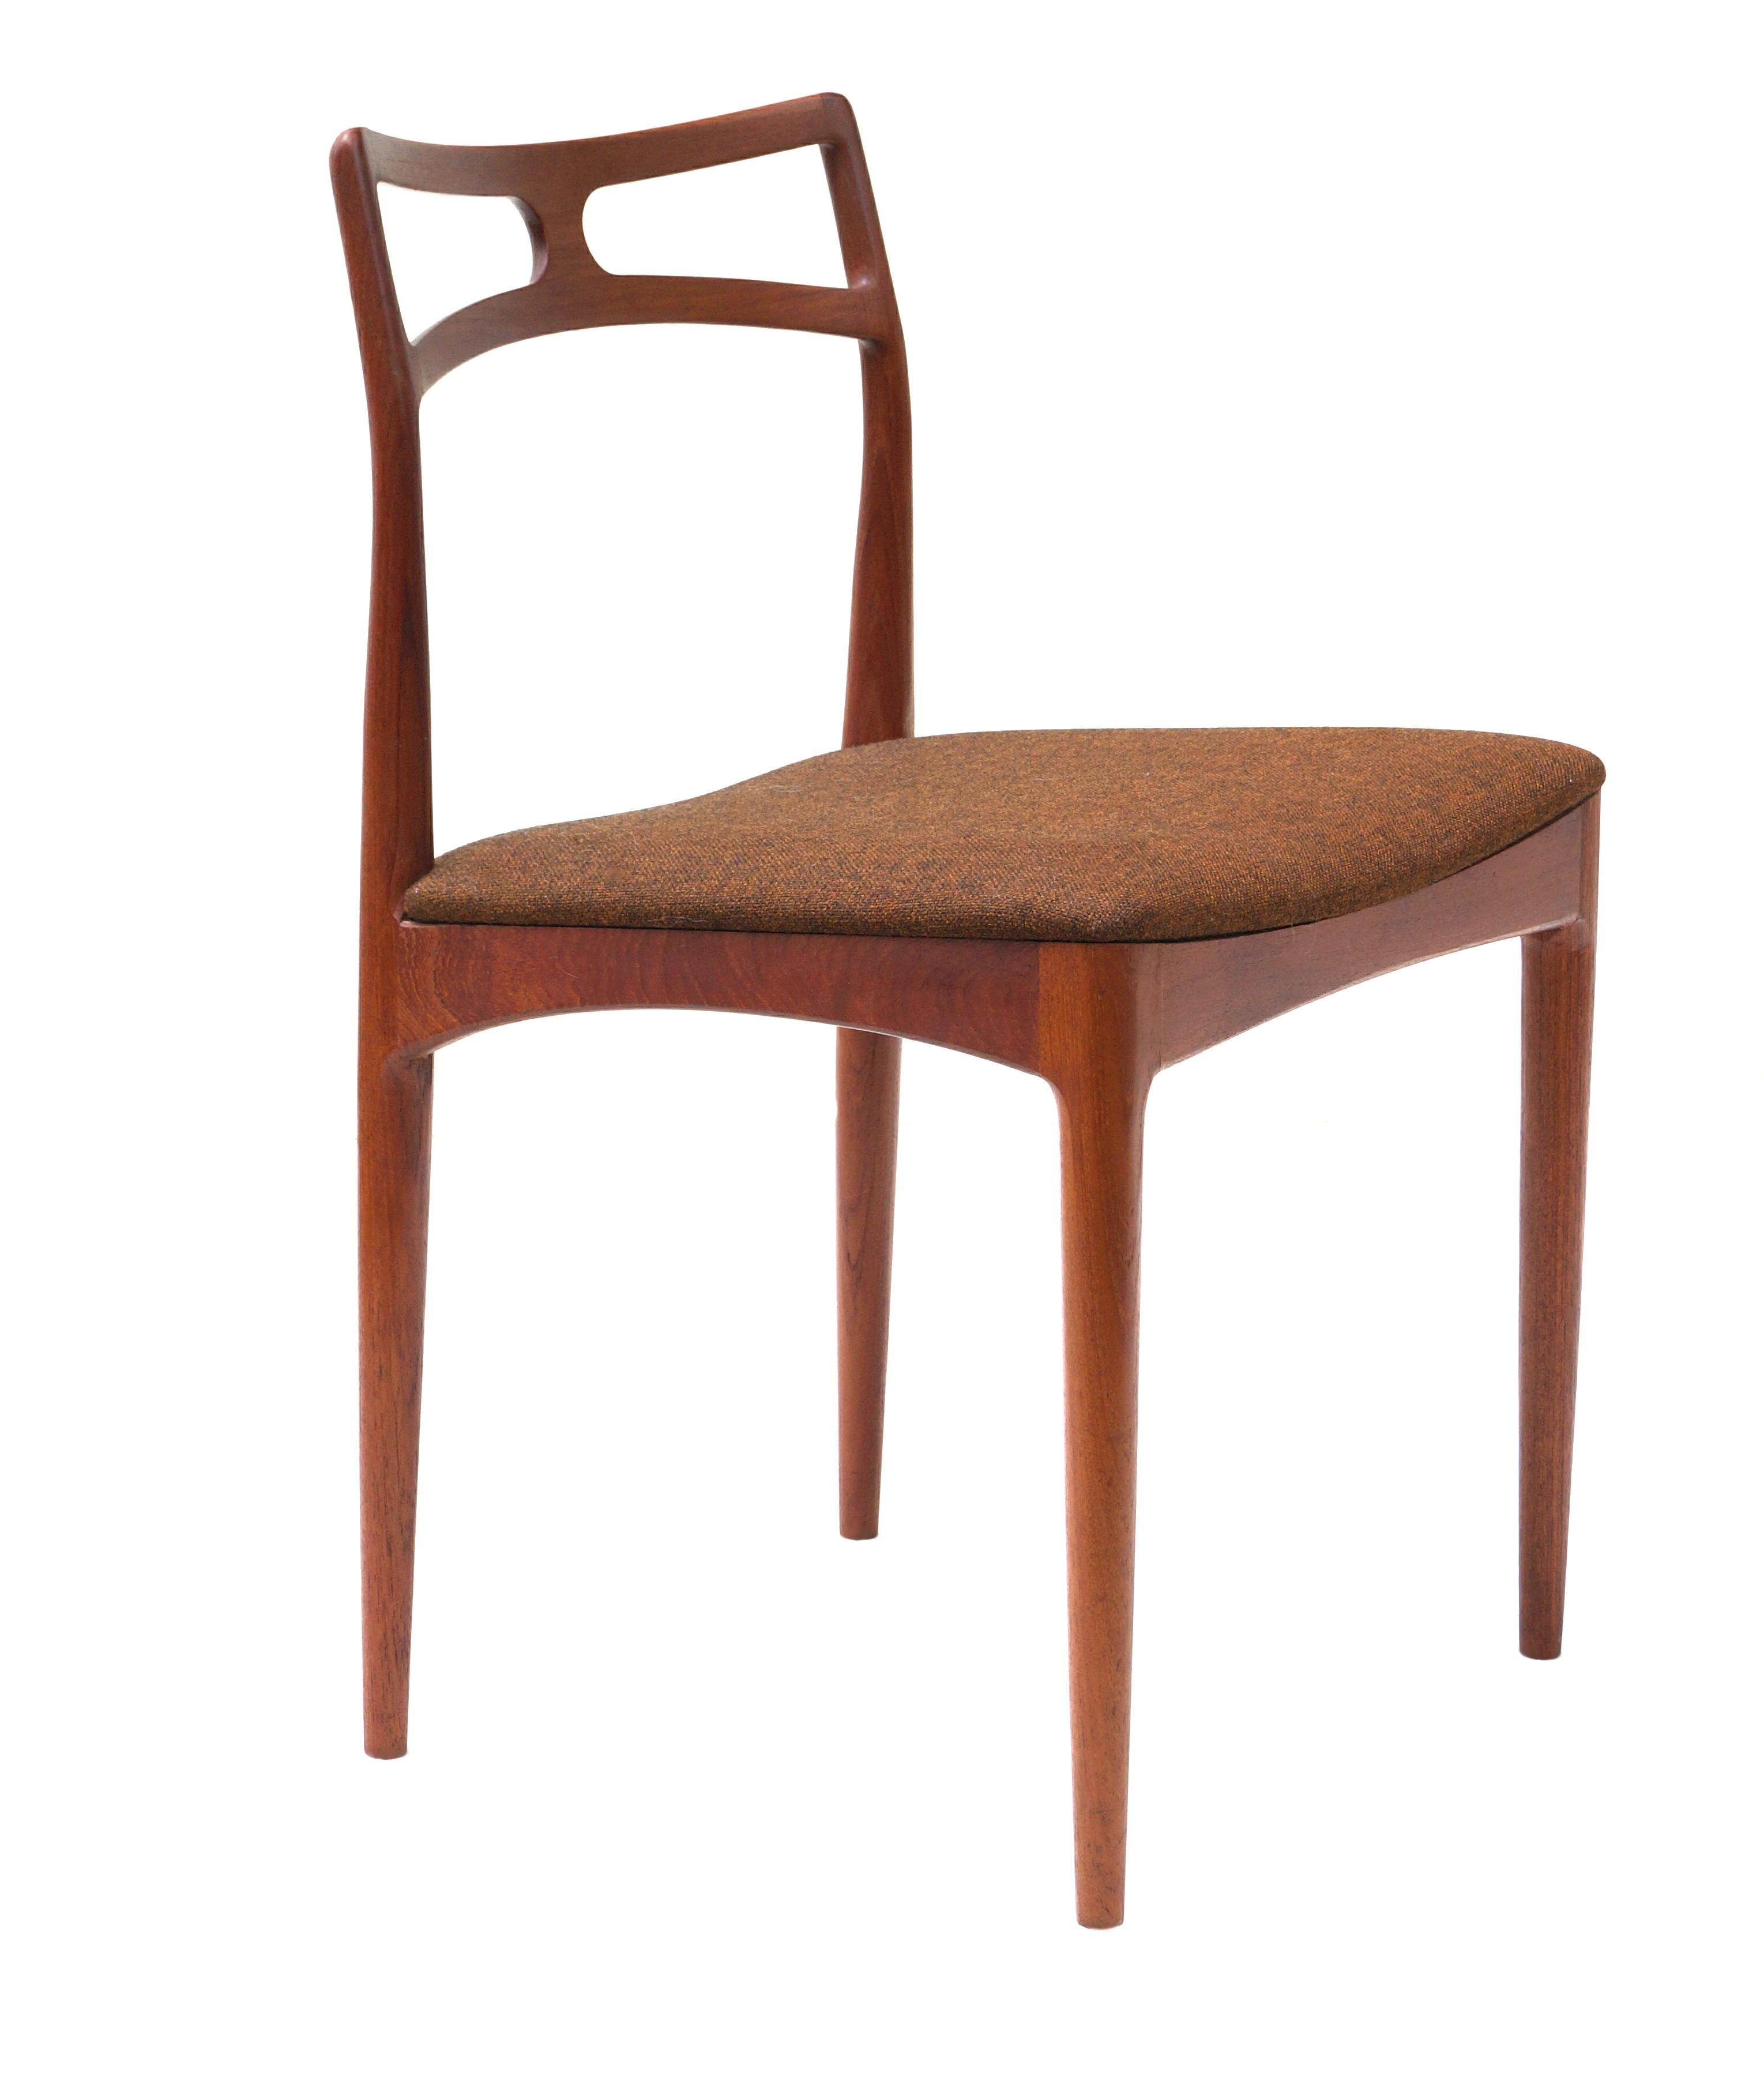 Set of 6 Johannes Andersen Teak Danish Modern Dining Room Chairs Denmark, 1960's For Sale 4